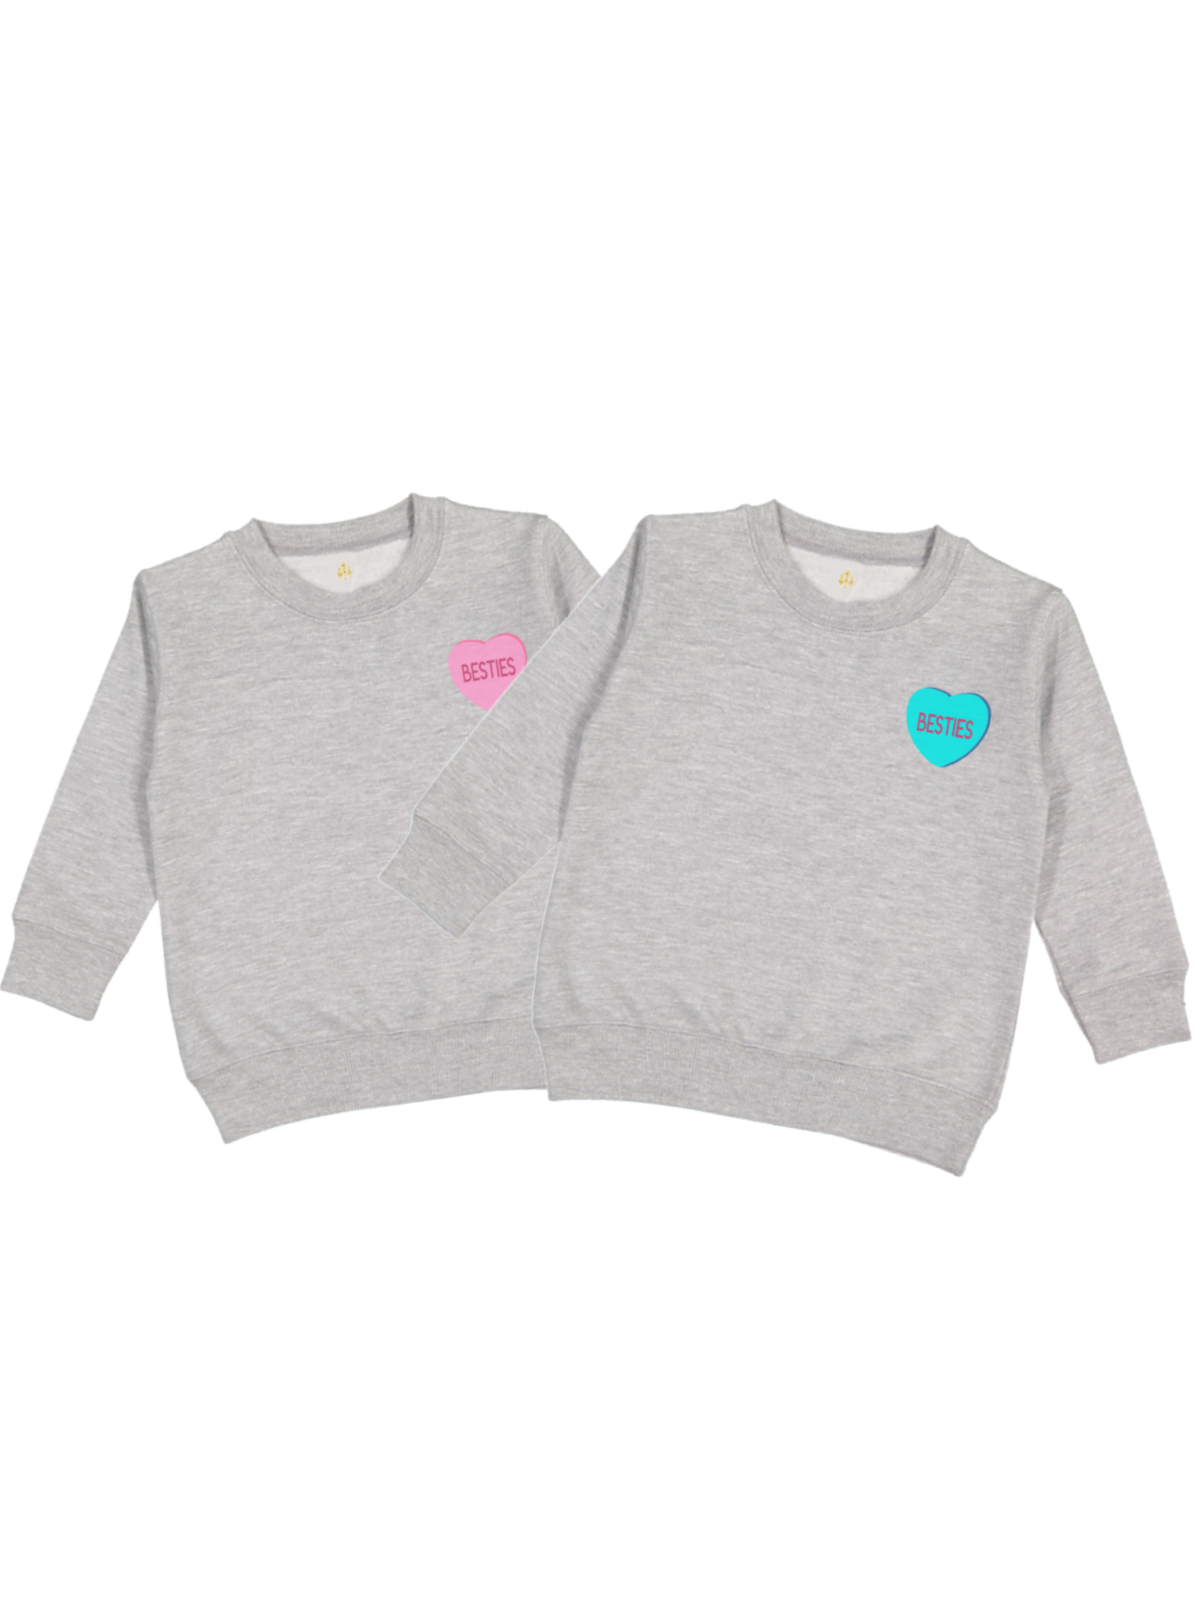 Matching Valentines' Day Sweatshirts for Best Friends